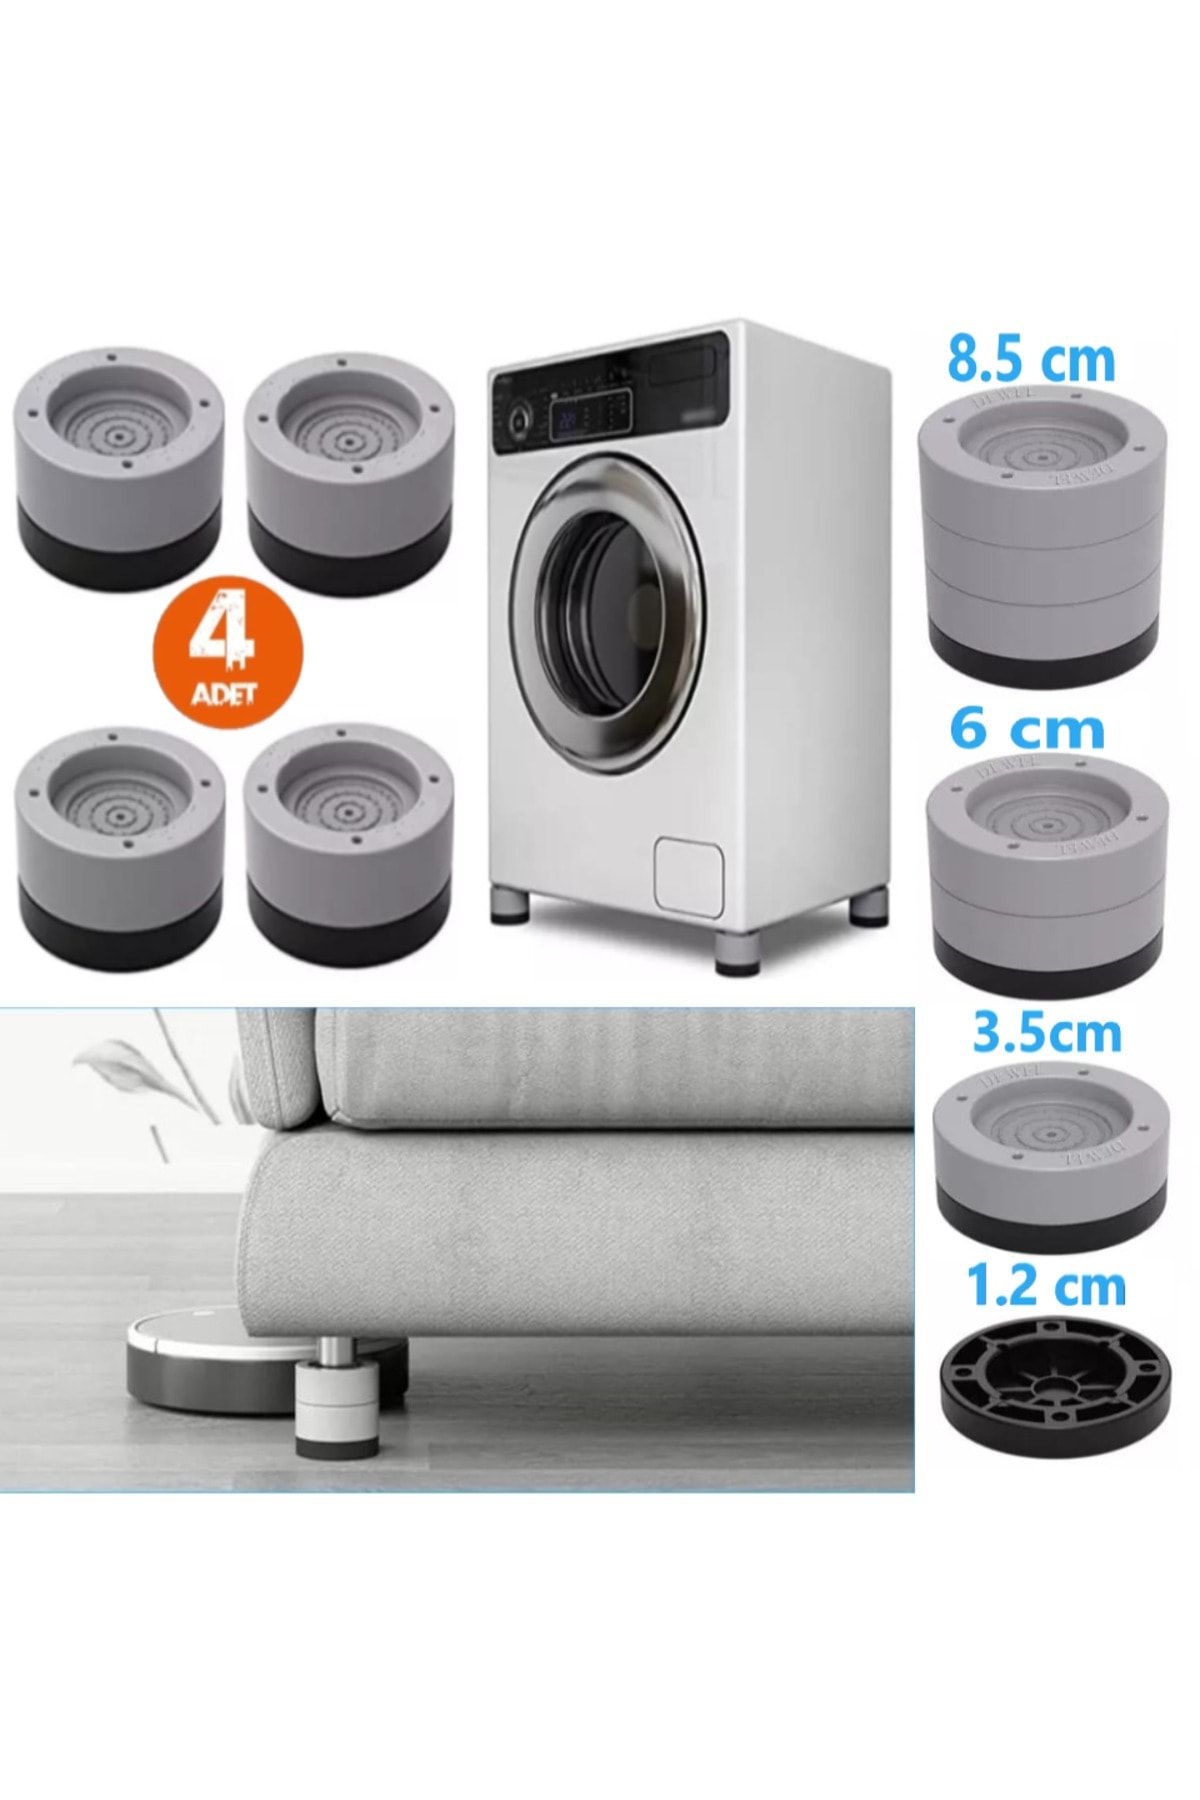 TİNEKE Beyaz Eşya Ayağı Çamaşır Makinesi Mobilya Titreşim Önleyici Kaydırmaz Ve 3.5 Cm Yükseltici 4 Lü Set